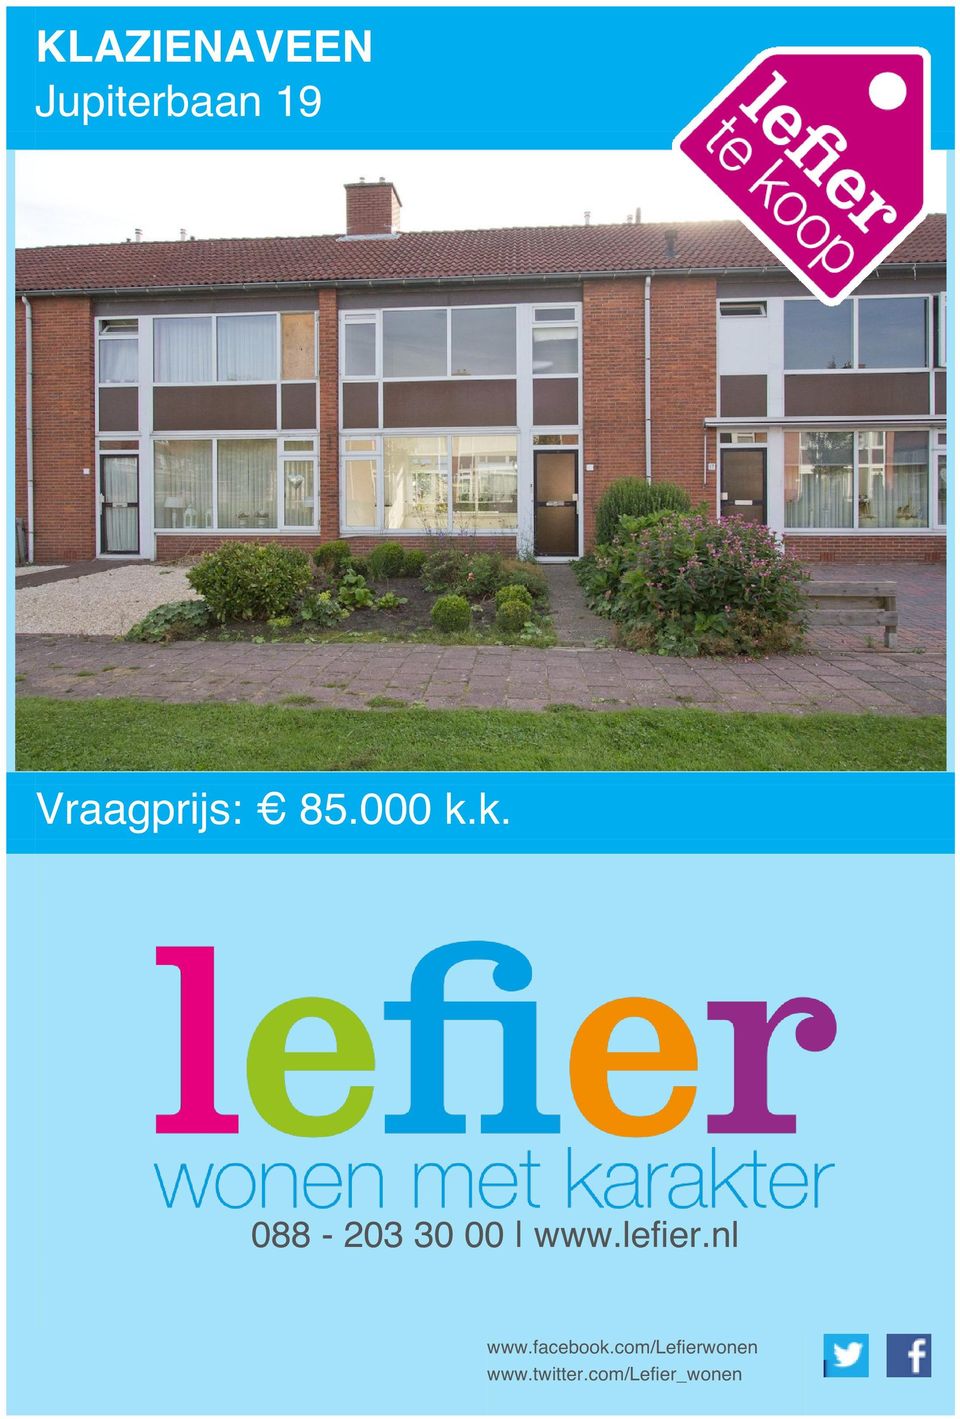 k. 088-203 30 00 www.lefier.nl www.